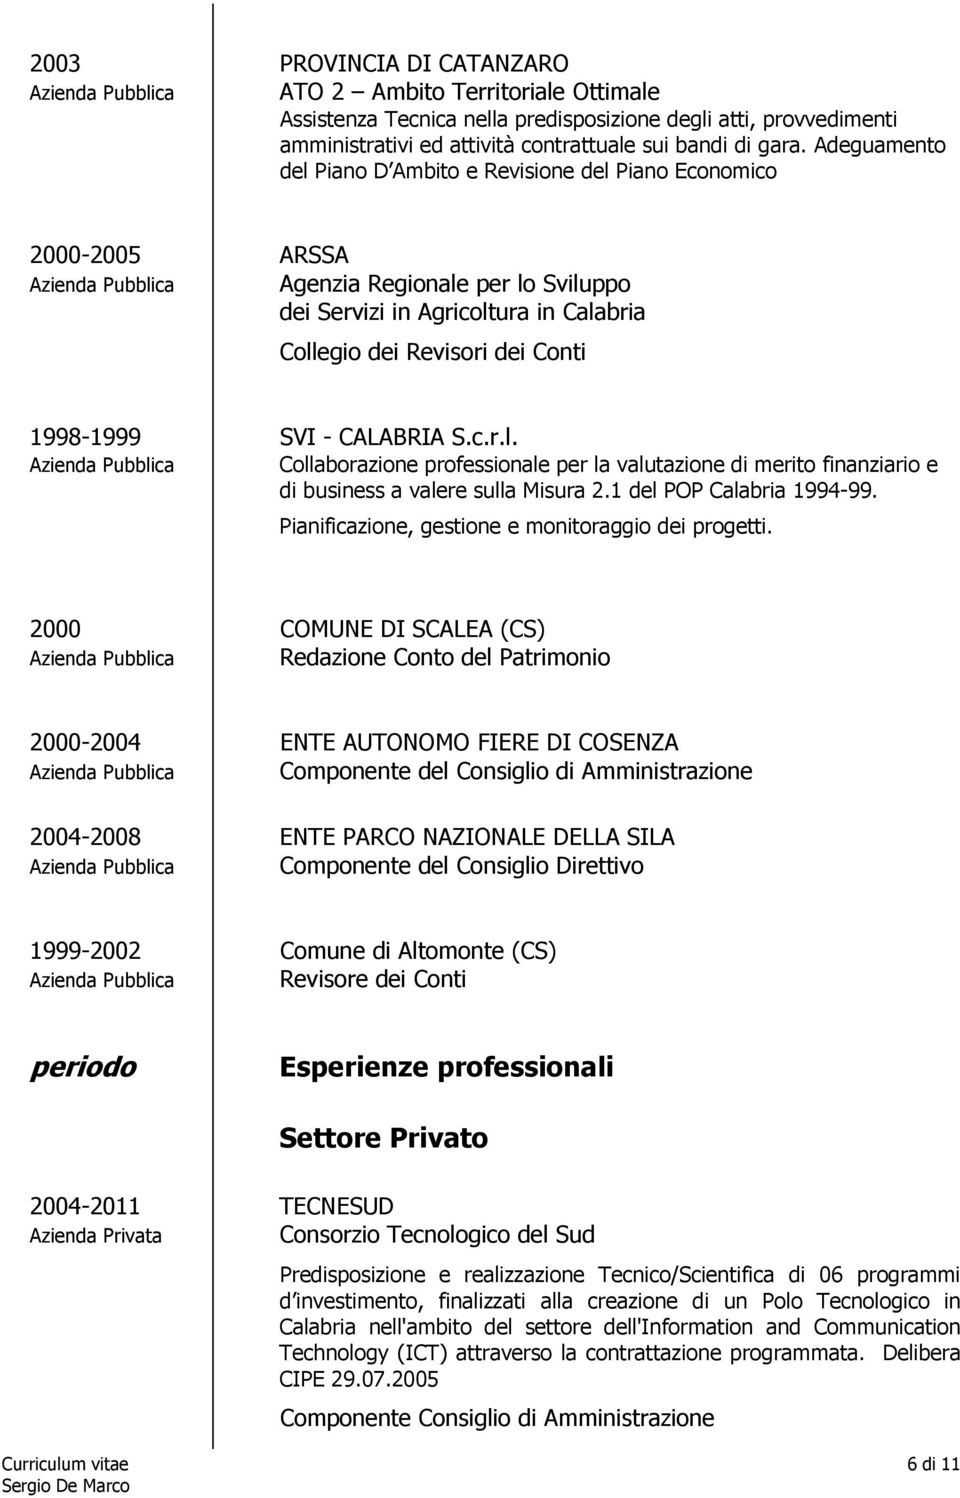 dei Conti 1998-1999 SVI - CALABRIA S.c.r.l. Azienda Pubblica Collaborazione professionale per la valutazione di merito finanziario e di business a valere sulla Misura 2.1 del POP Calabria 1994-99.